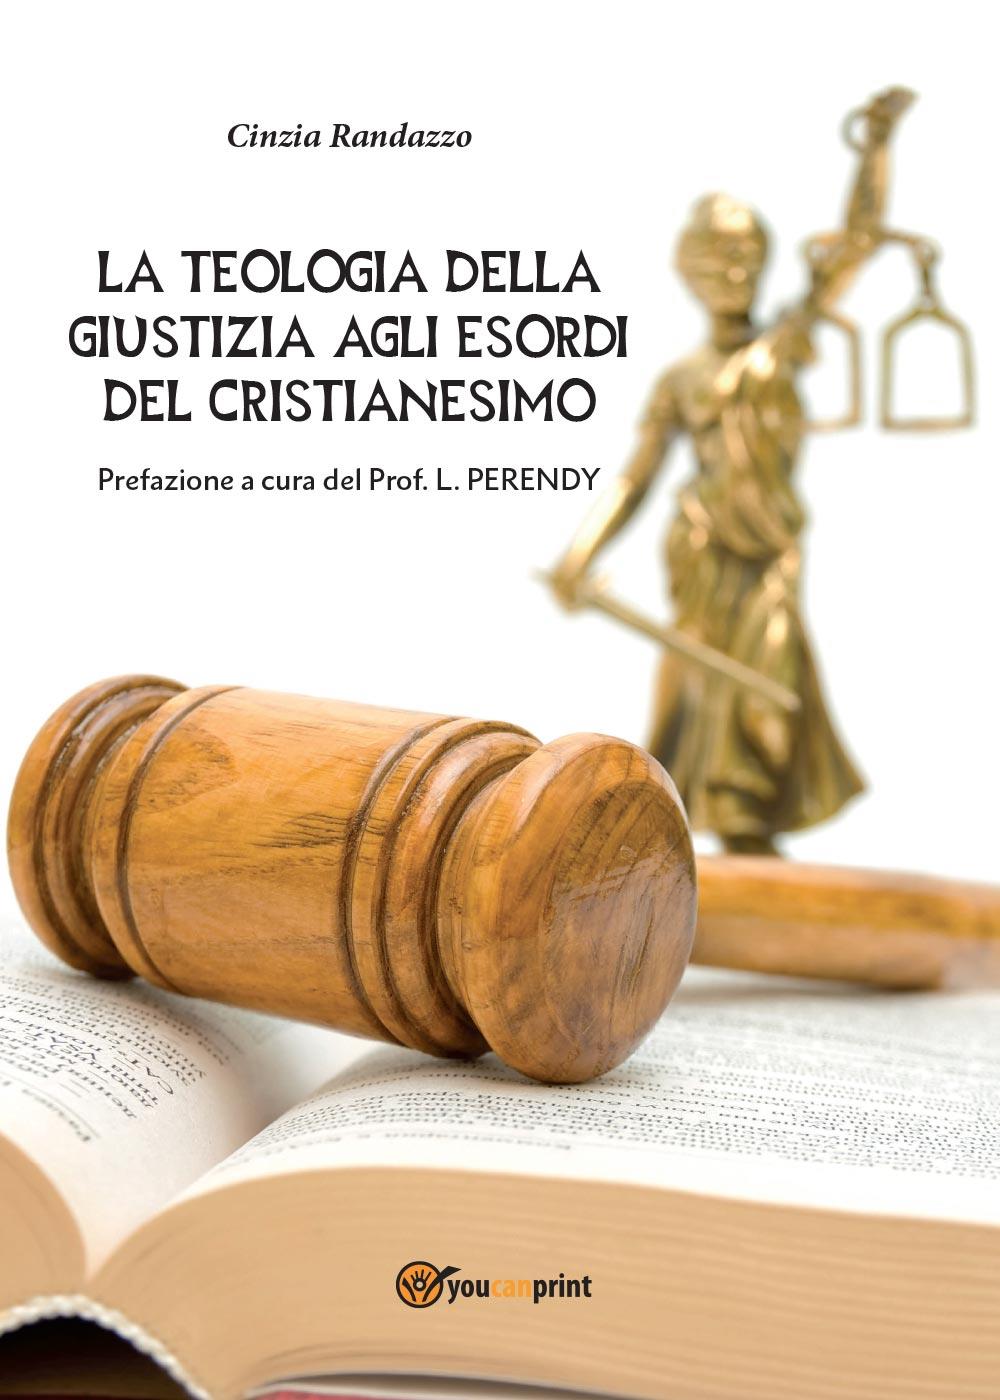 La teologia della giustizia agli esordi del cristianesimo